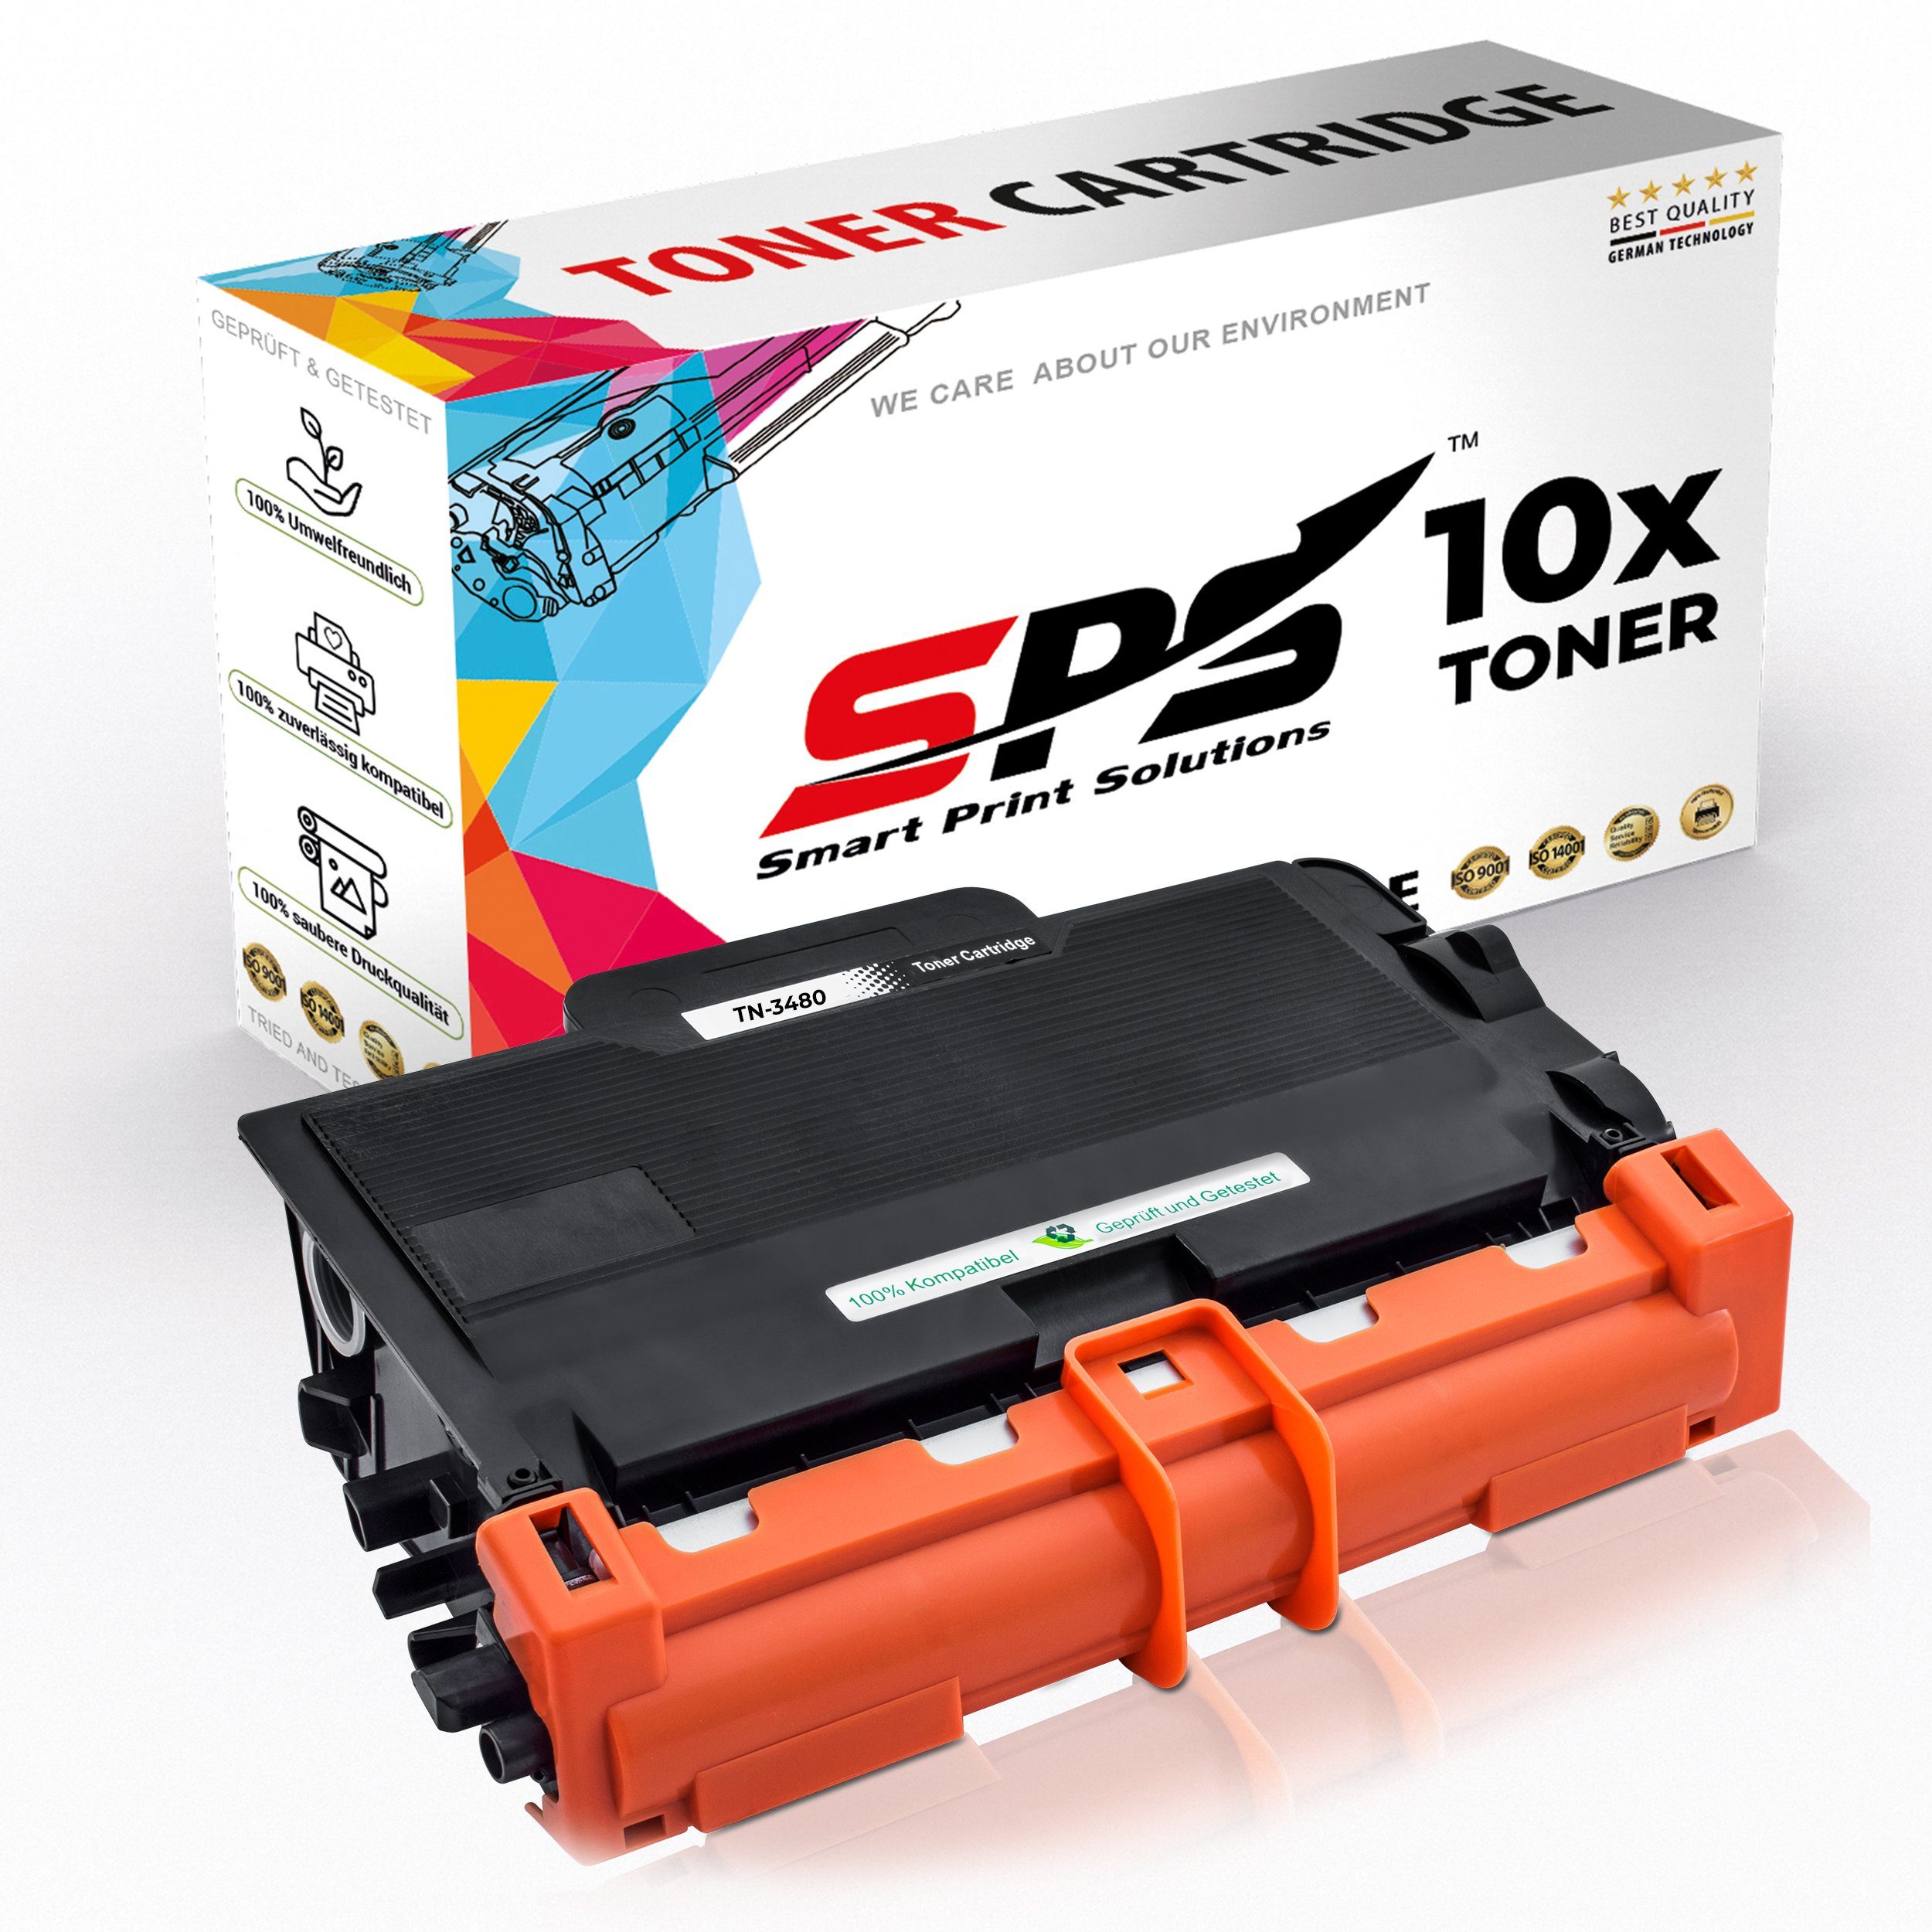 SPS Tonerkartusche Kompatibel für Brother HL-L5200 TN-3430, (10er Pack)